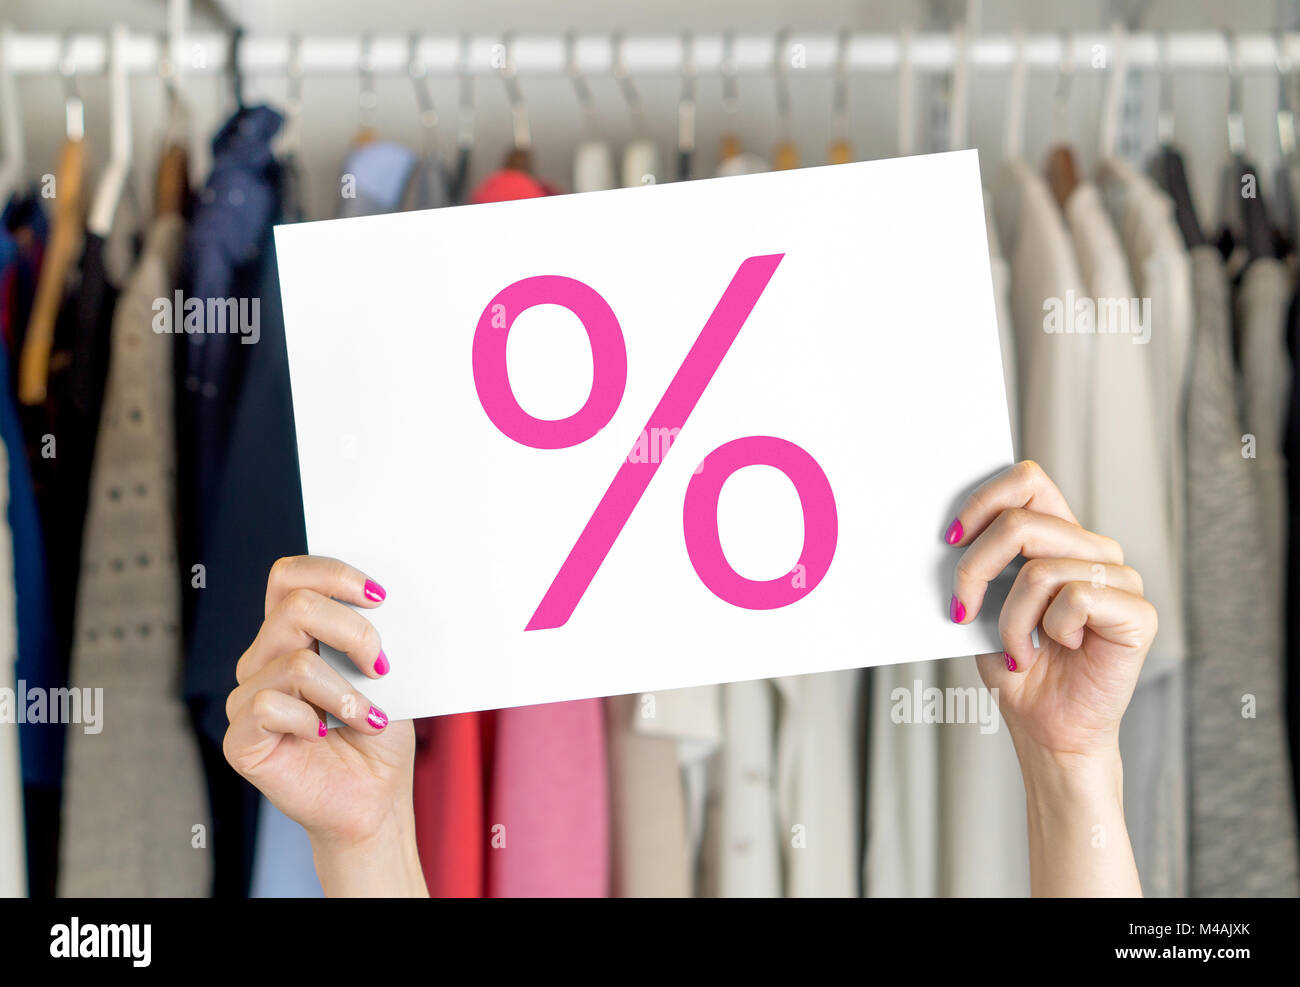 La vente, la négociation et la réduction des prix bon marché en magasin vêtements Banque D'Images